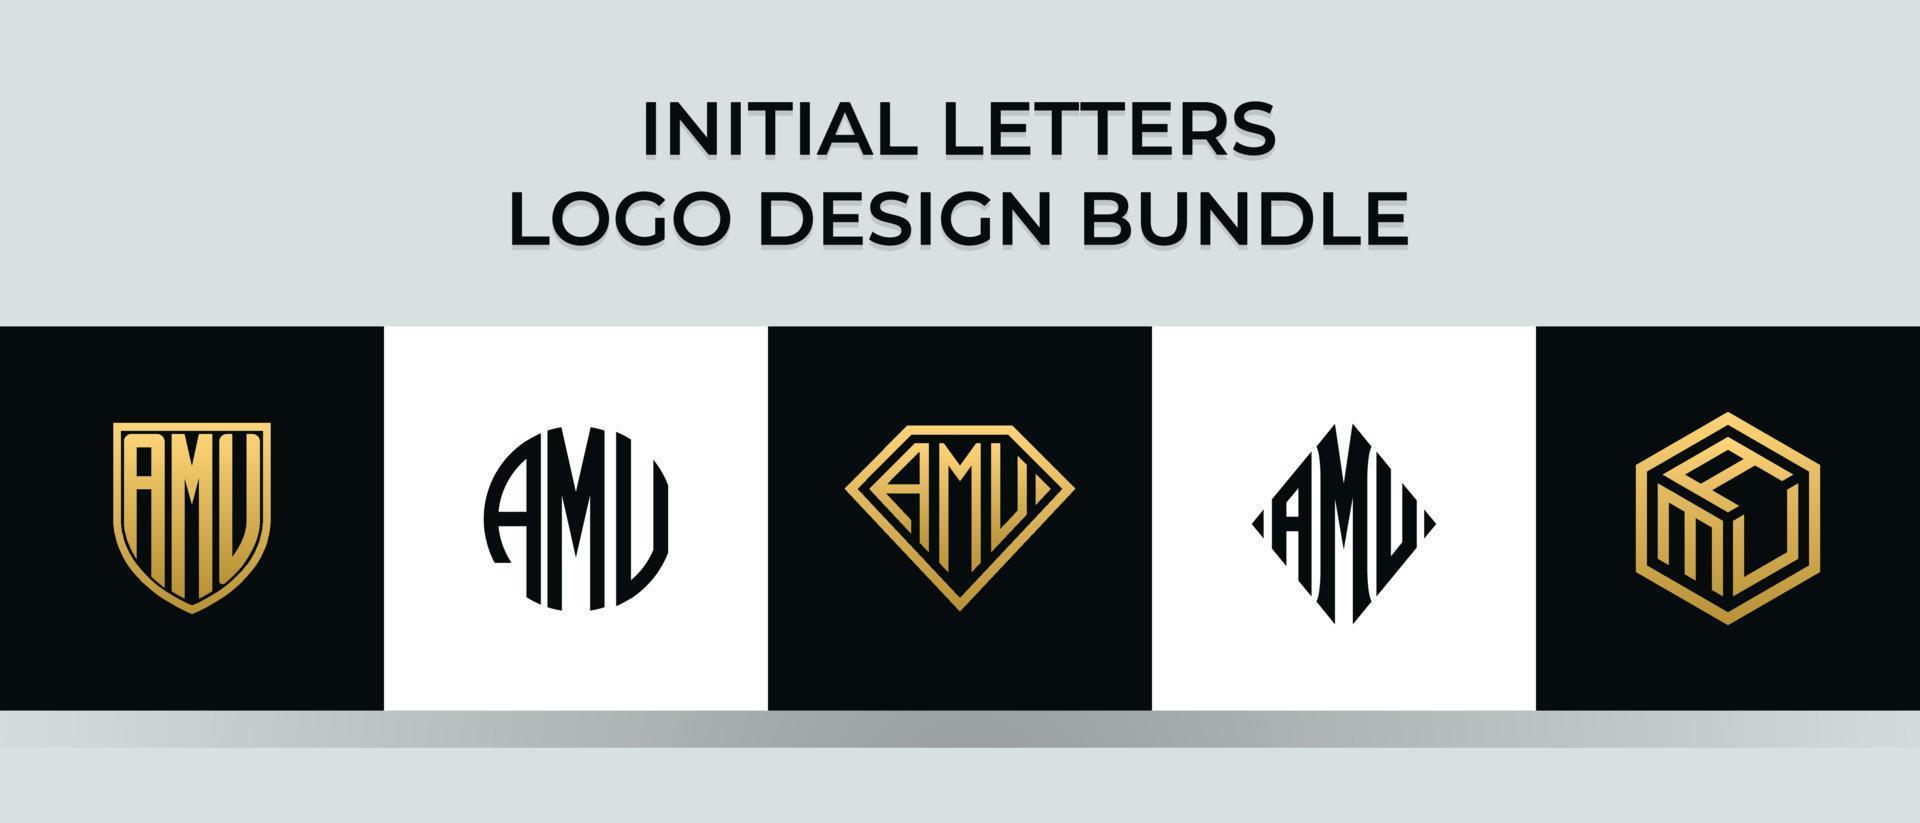 lettere iniziali amu logo design bundle vettore